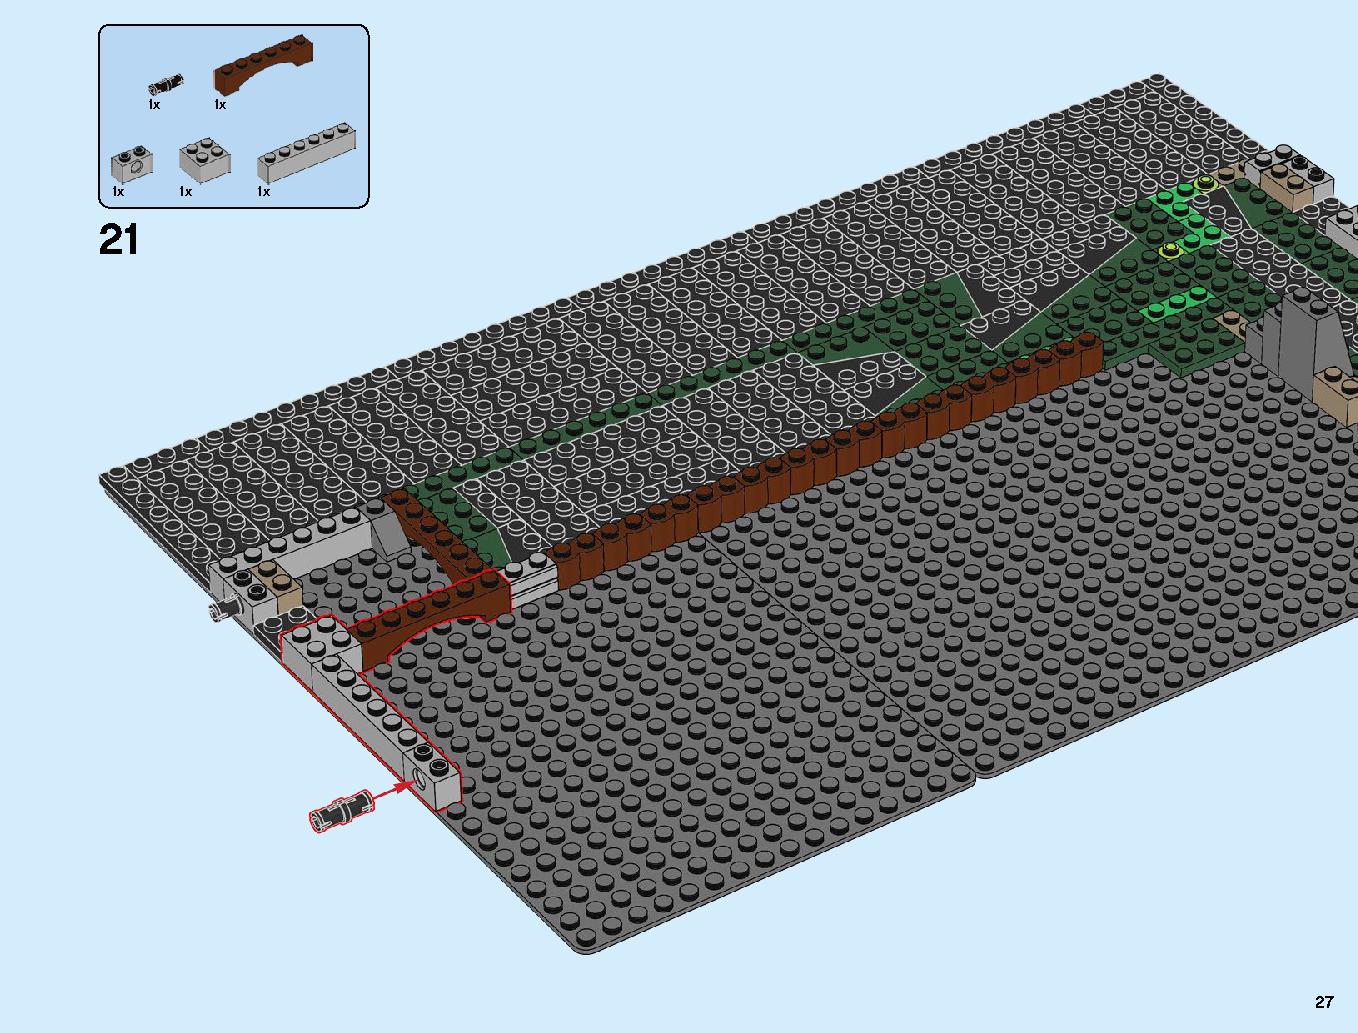 ニンジャゴーシティ・ポートパーク 70657 レゴの商品情報 レゴの説明書・組立方法 27 page